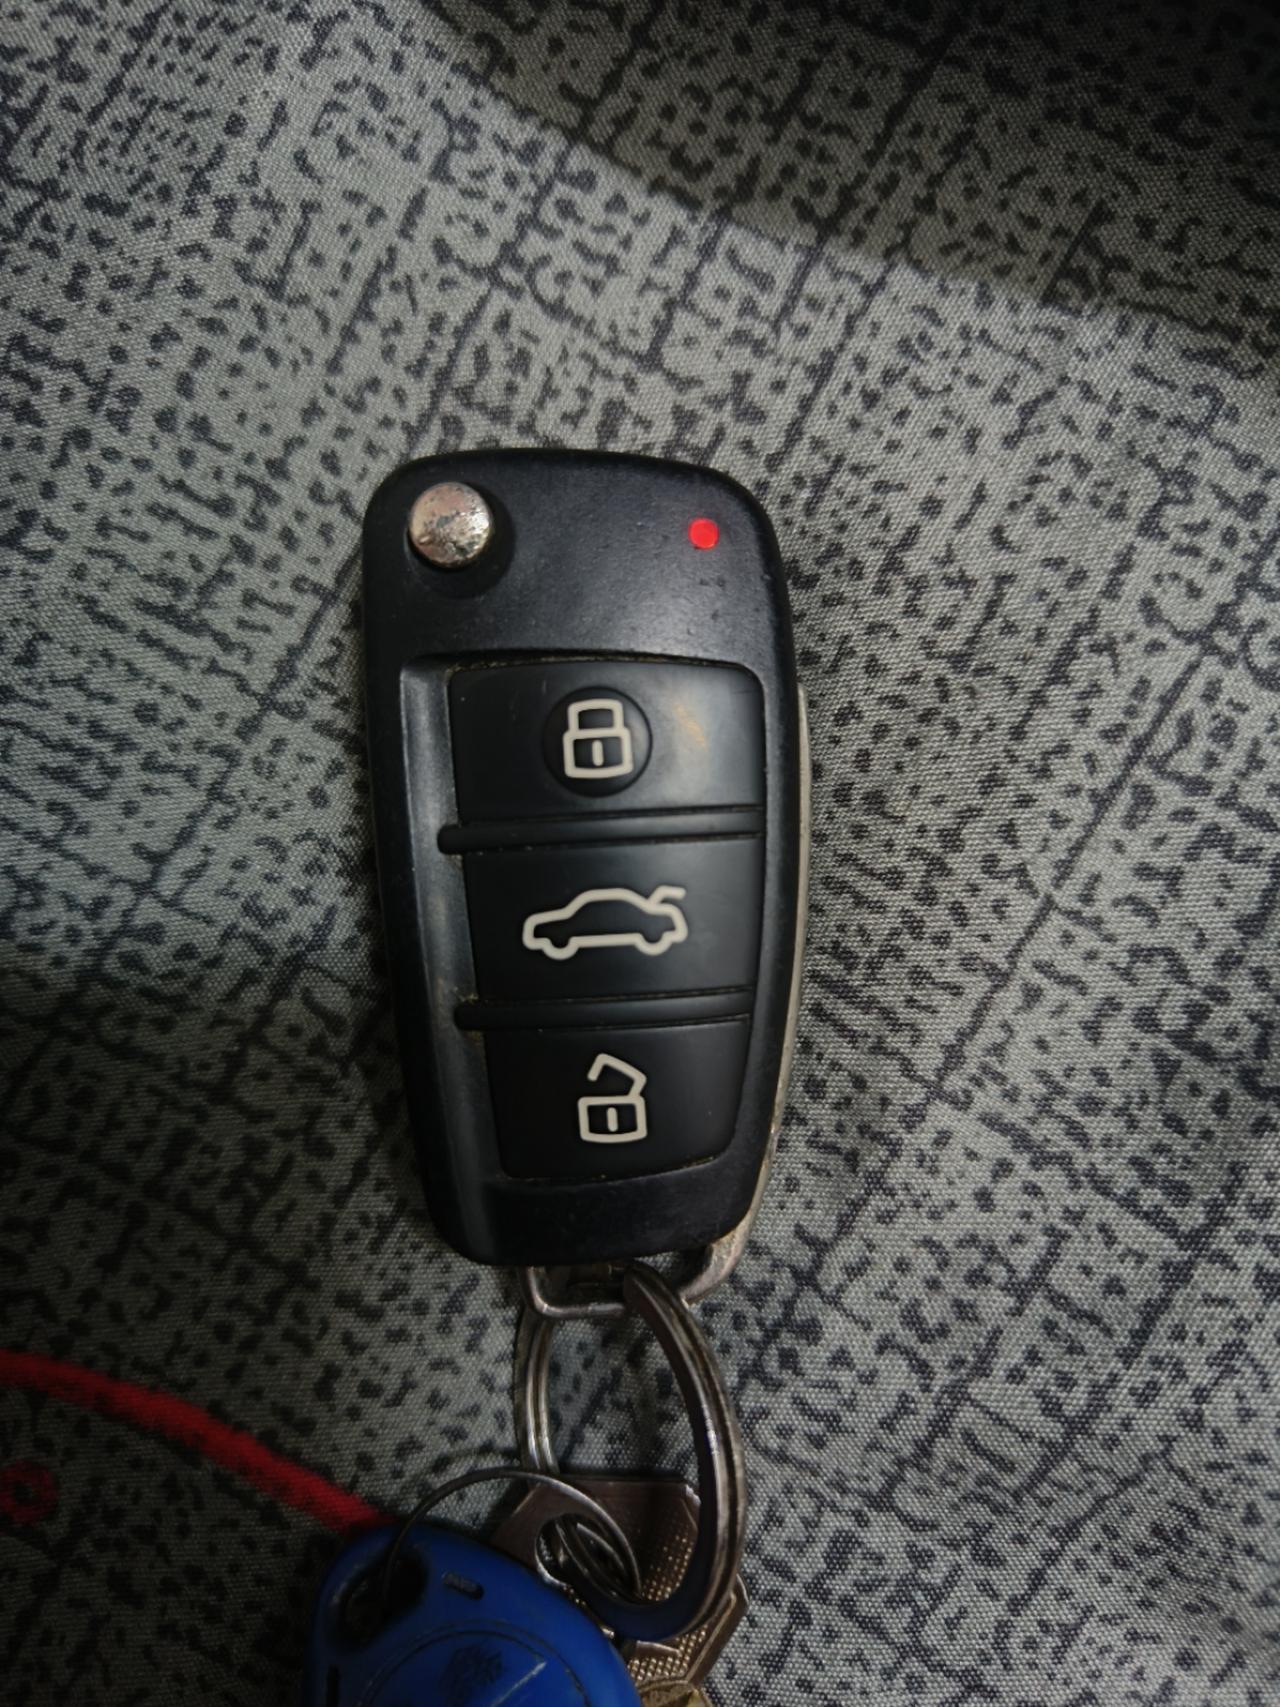 奇瑞艾瑞泽5 今天碰到了个问题车钥匙红灯一直亮着，拆了电池再装上去也是亮着现在按了车子一点反应也没有，是什么问题